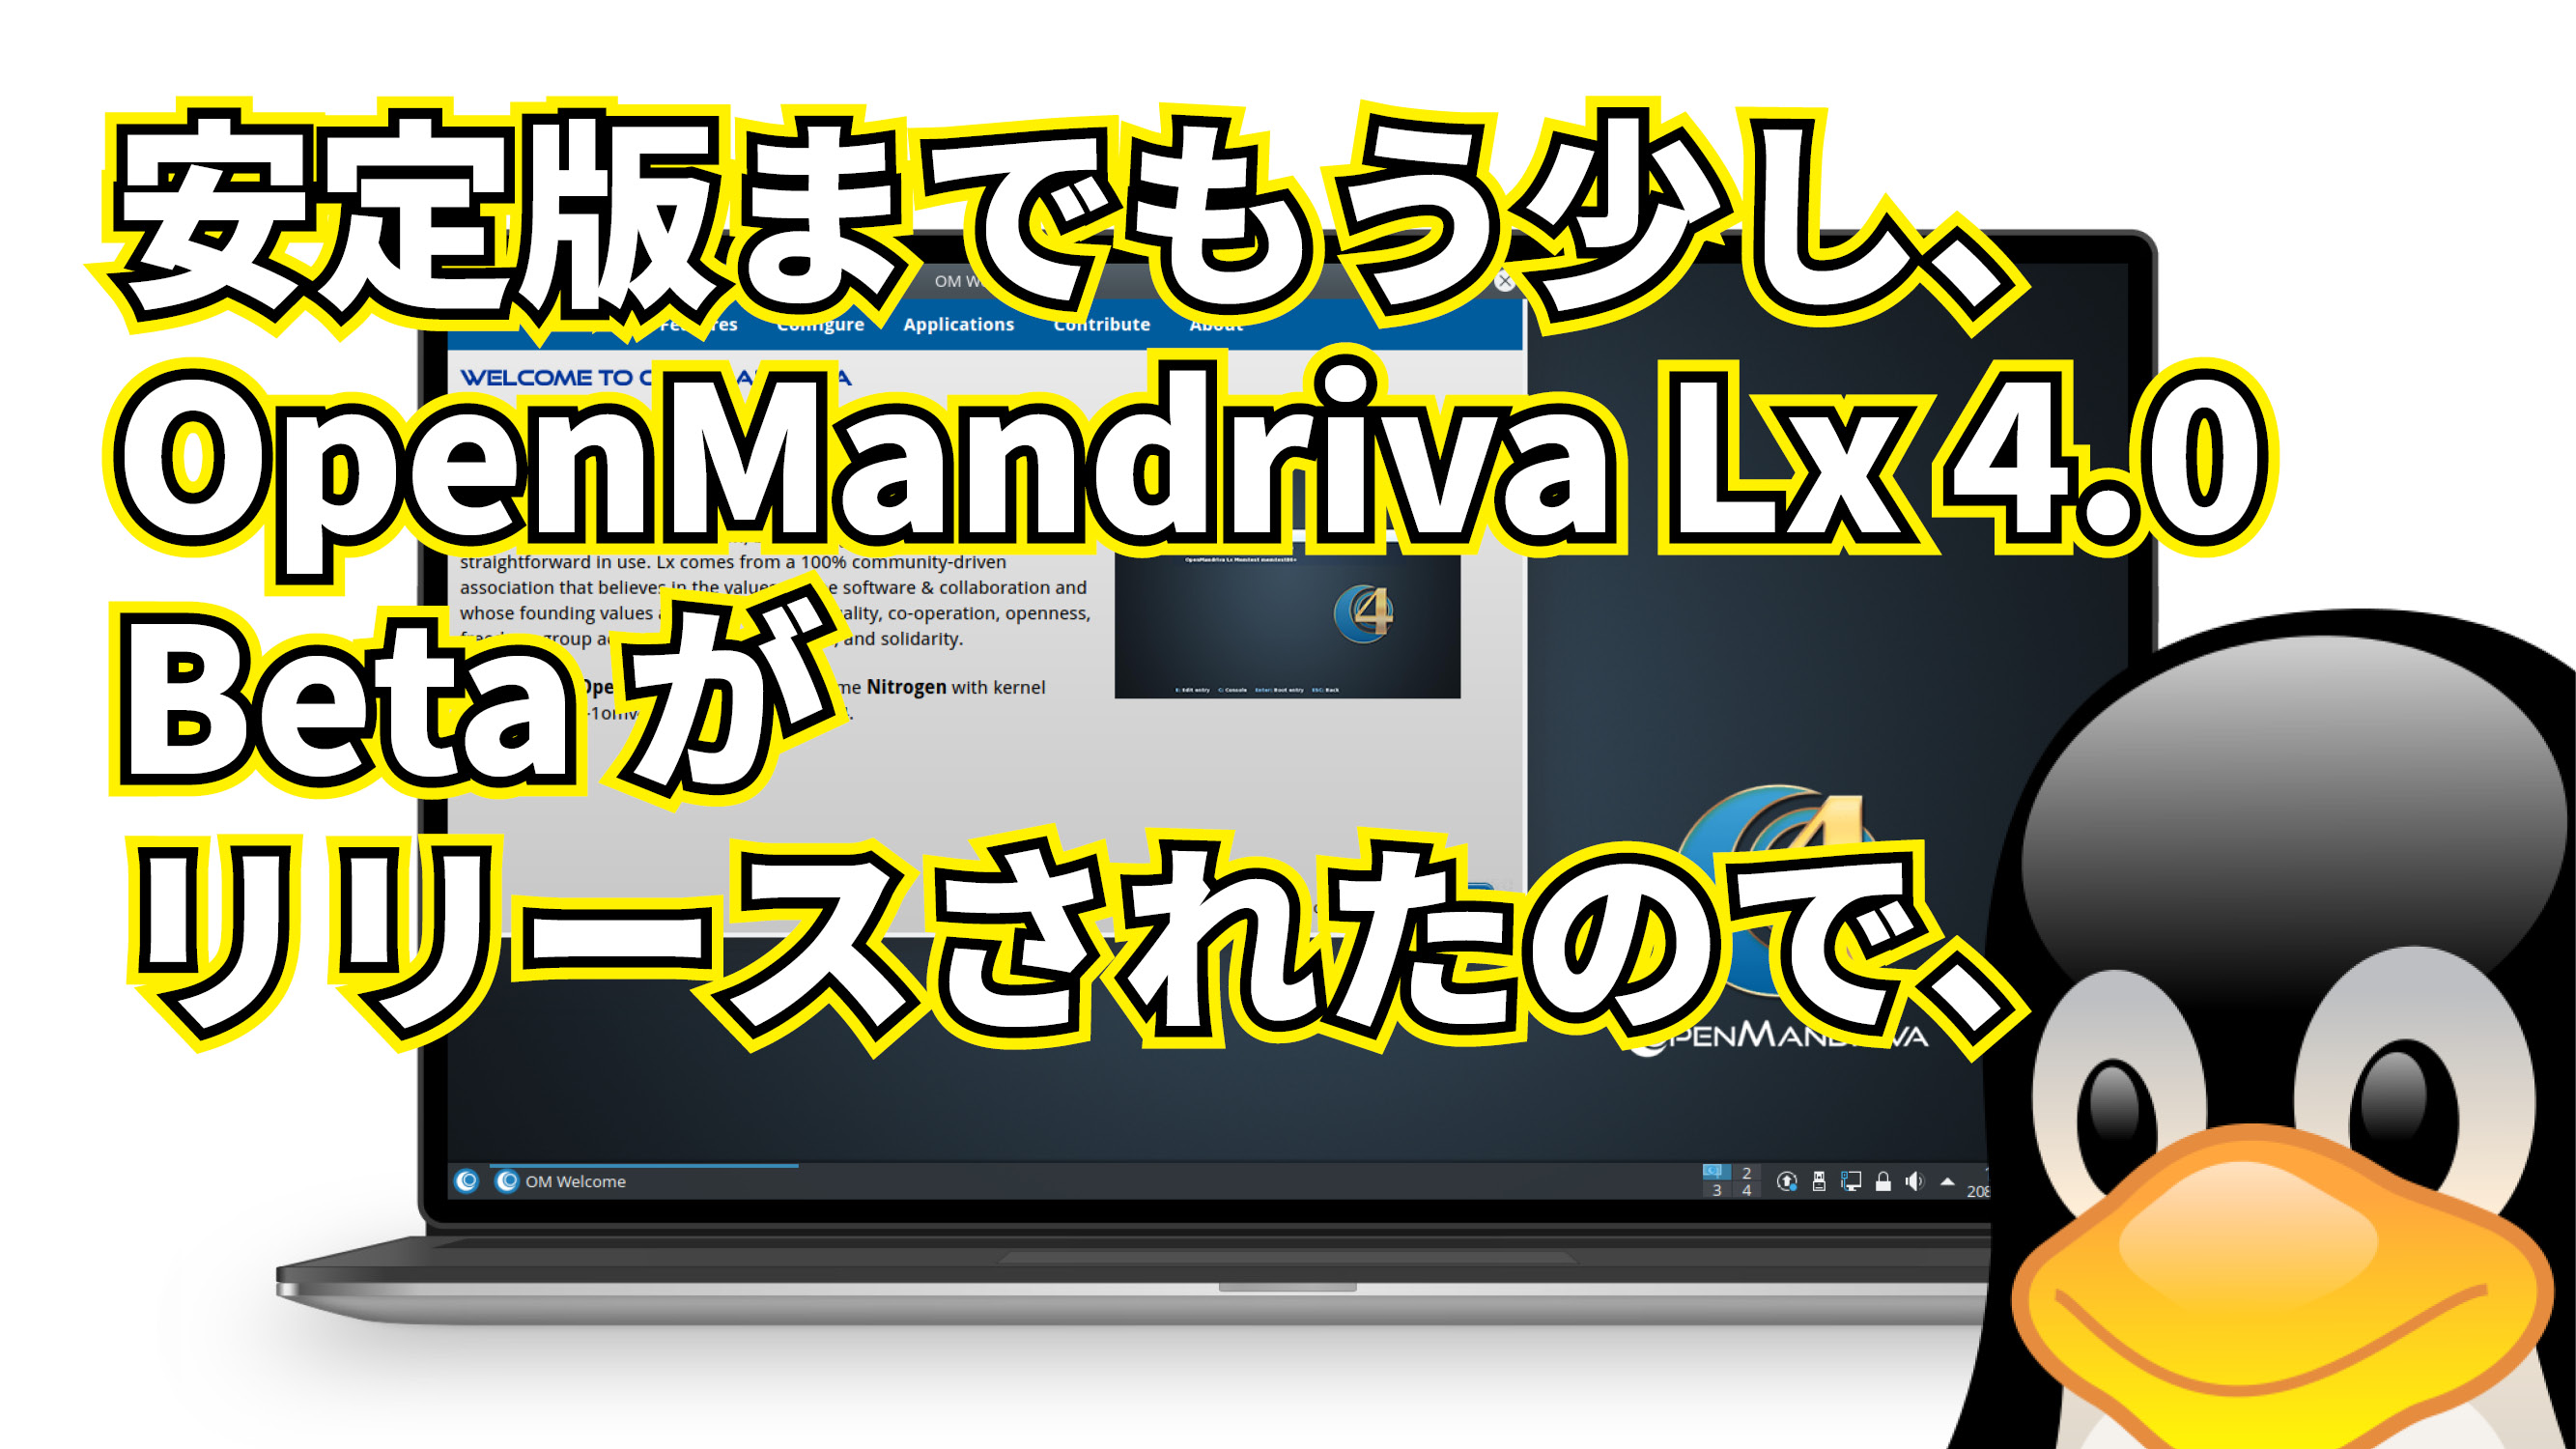 OpenMandriva Lx 4.0 Beta がリリースされたので、